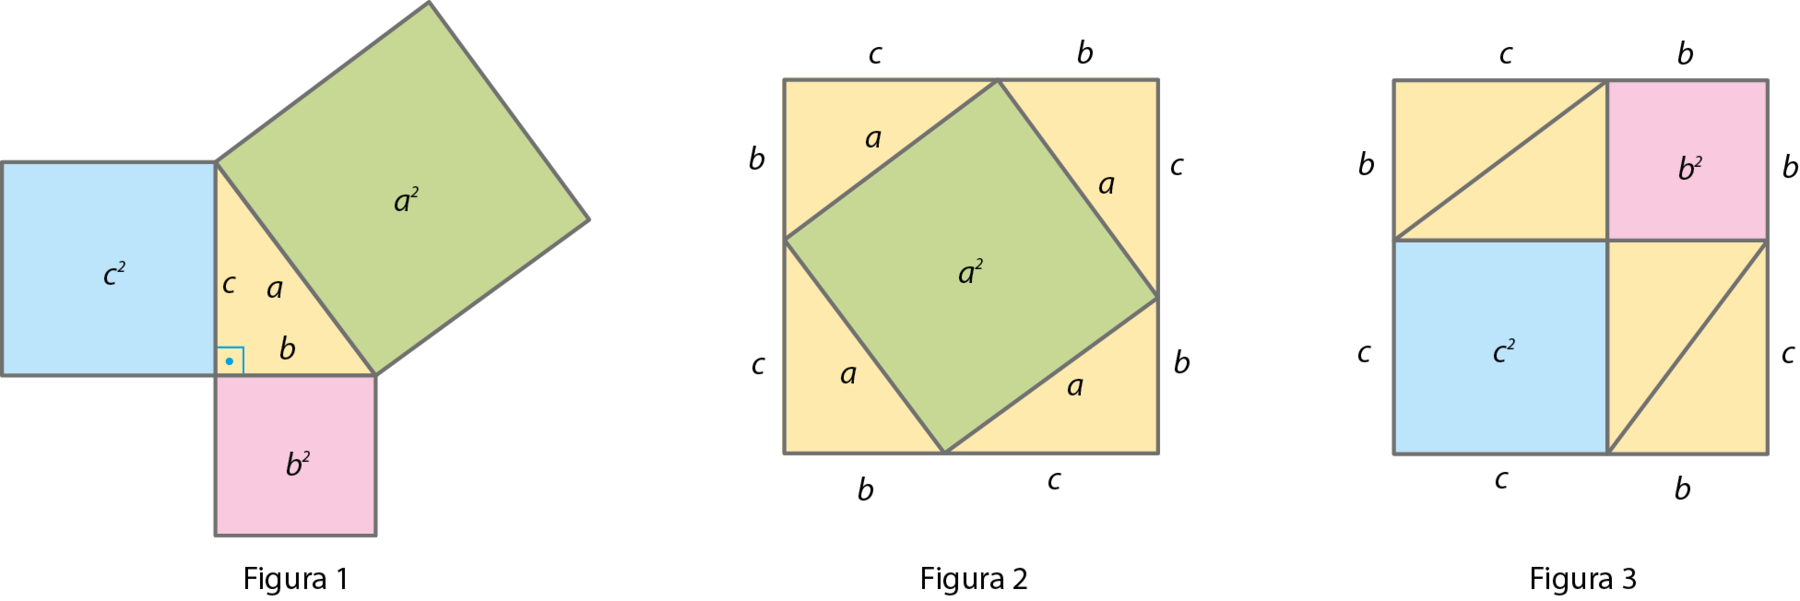 Ilustração. Triângulo amarelo de lados a, b e c e ângulo reto entre b e c. Junto ao lado a, quadrado verde de medida de área a elevado ao quadrado. Um de seus lados é o próprio lado a do triângulo. Junto ao lado b, quadrado rosa de medida de área b elevado ao quadrado. Um de seus lados é o próprio lado b do triângulo. Junto ao lado c, quadrado azul de medida de área c elevado ao quadrado. Um de seus lados é o próprio lado c do triângulo.

Ilustração. Quadrado amarelo. Dentro, quadrado verde na diagonal com medida a elevado ao quadrado. Em cada lado entre o quadrado amarelo e o verde, um triângulo a por b por c.

Ilustração. Figura composta por dois triângulos amarelos formando um retângulo b por c. Ao lado, quadrado rosa b por b, com texto b elevado ao quadrado escrito ao centro. Abaixo dos triângulos quadrado azul c por c, com texto c elevado ao quadrado escrito ao centro, ao seu lado e abaixo do quadrado rosa, dois triângulos amarelos formando um retângulo b por c.